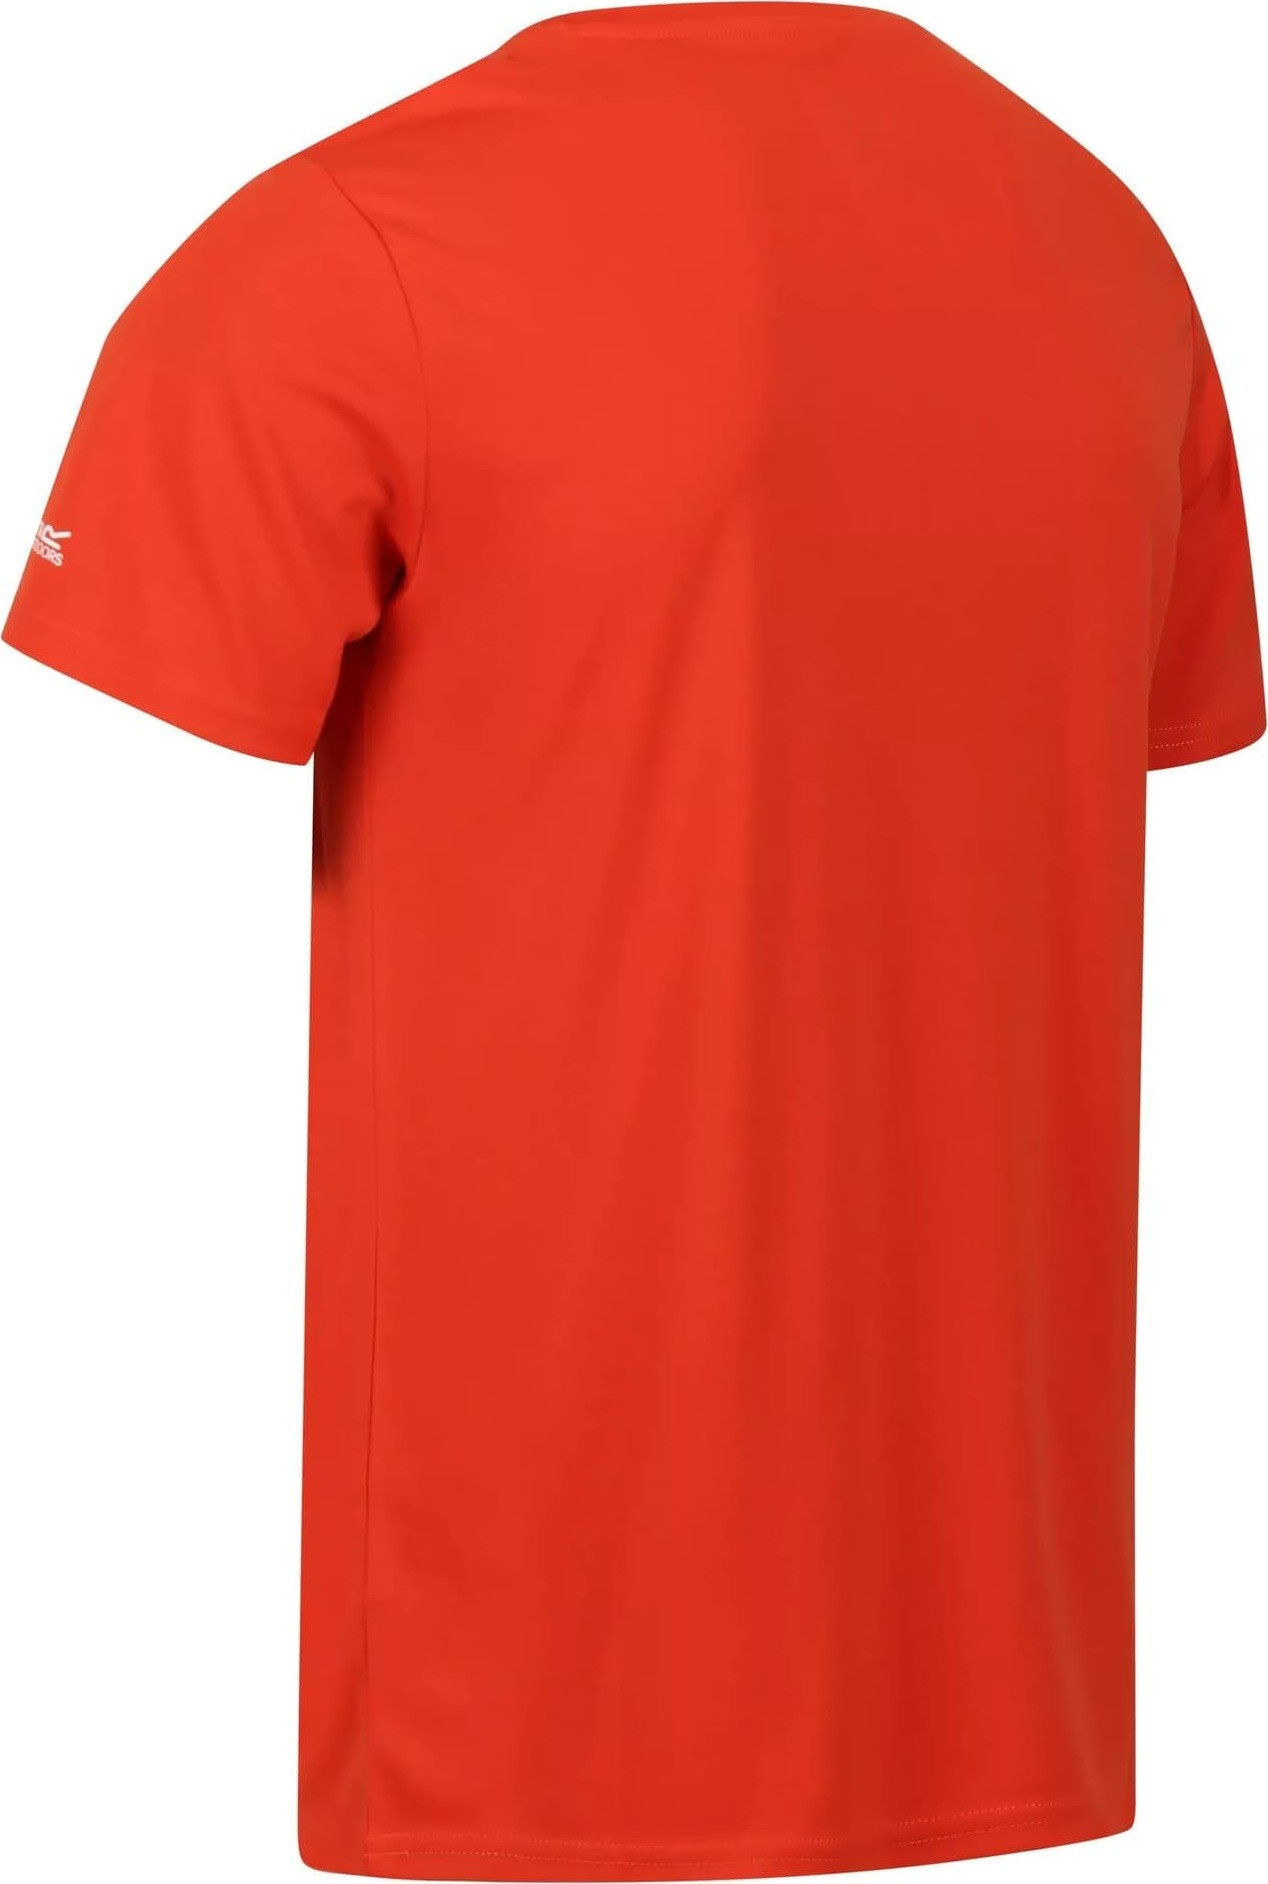 Pánské tričko Regatta Fingal VII RMT272-33L oranžové Oranžová M